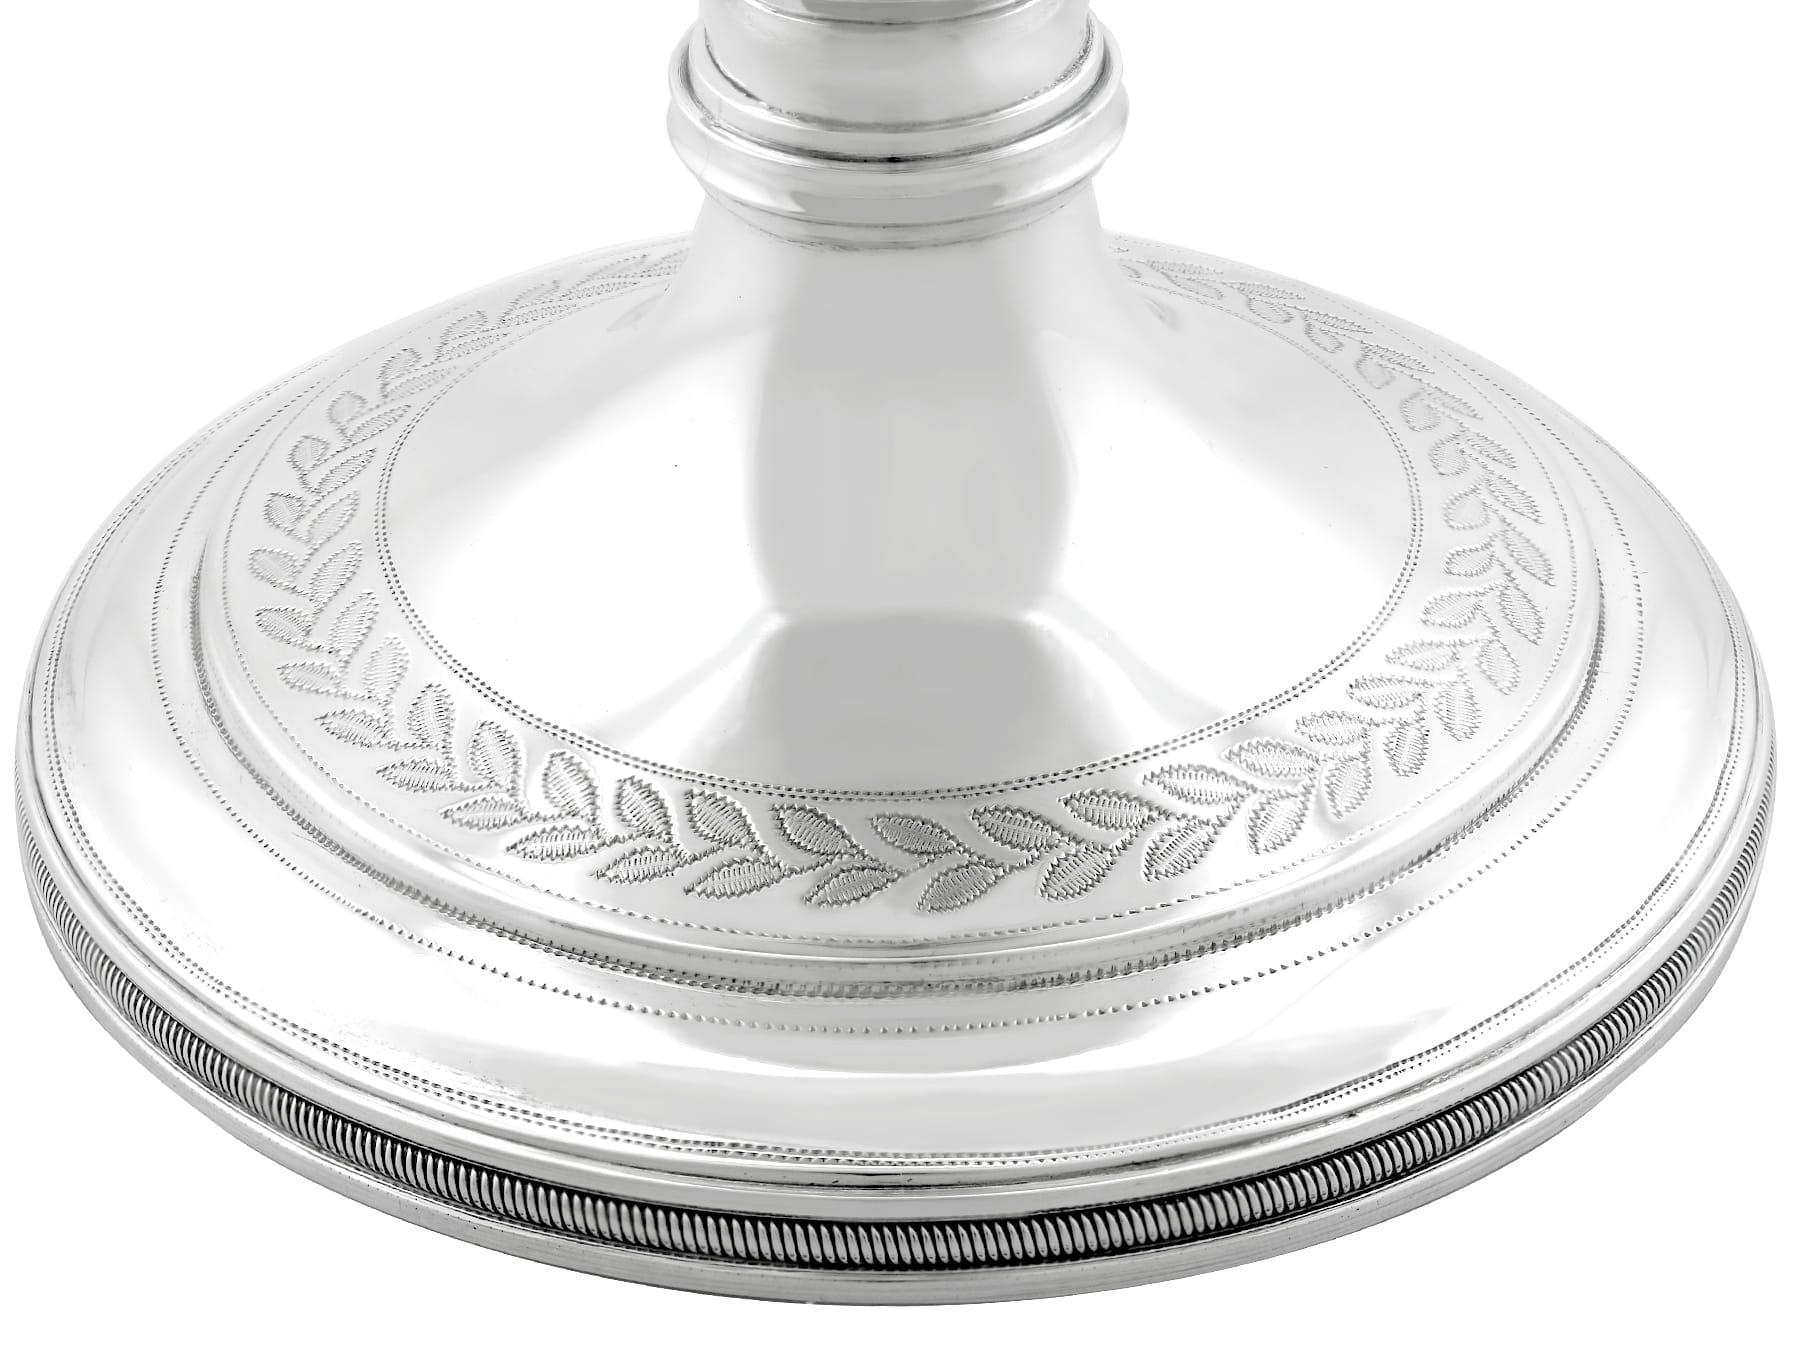 Antique George IV Scottish Sterling Silver Goblet (1820) 1